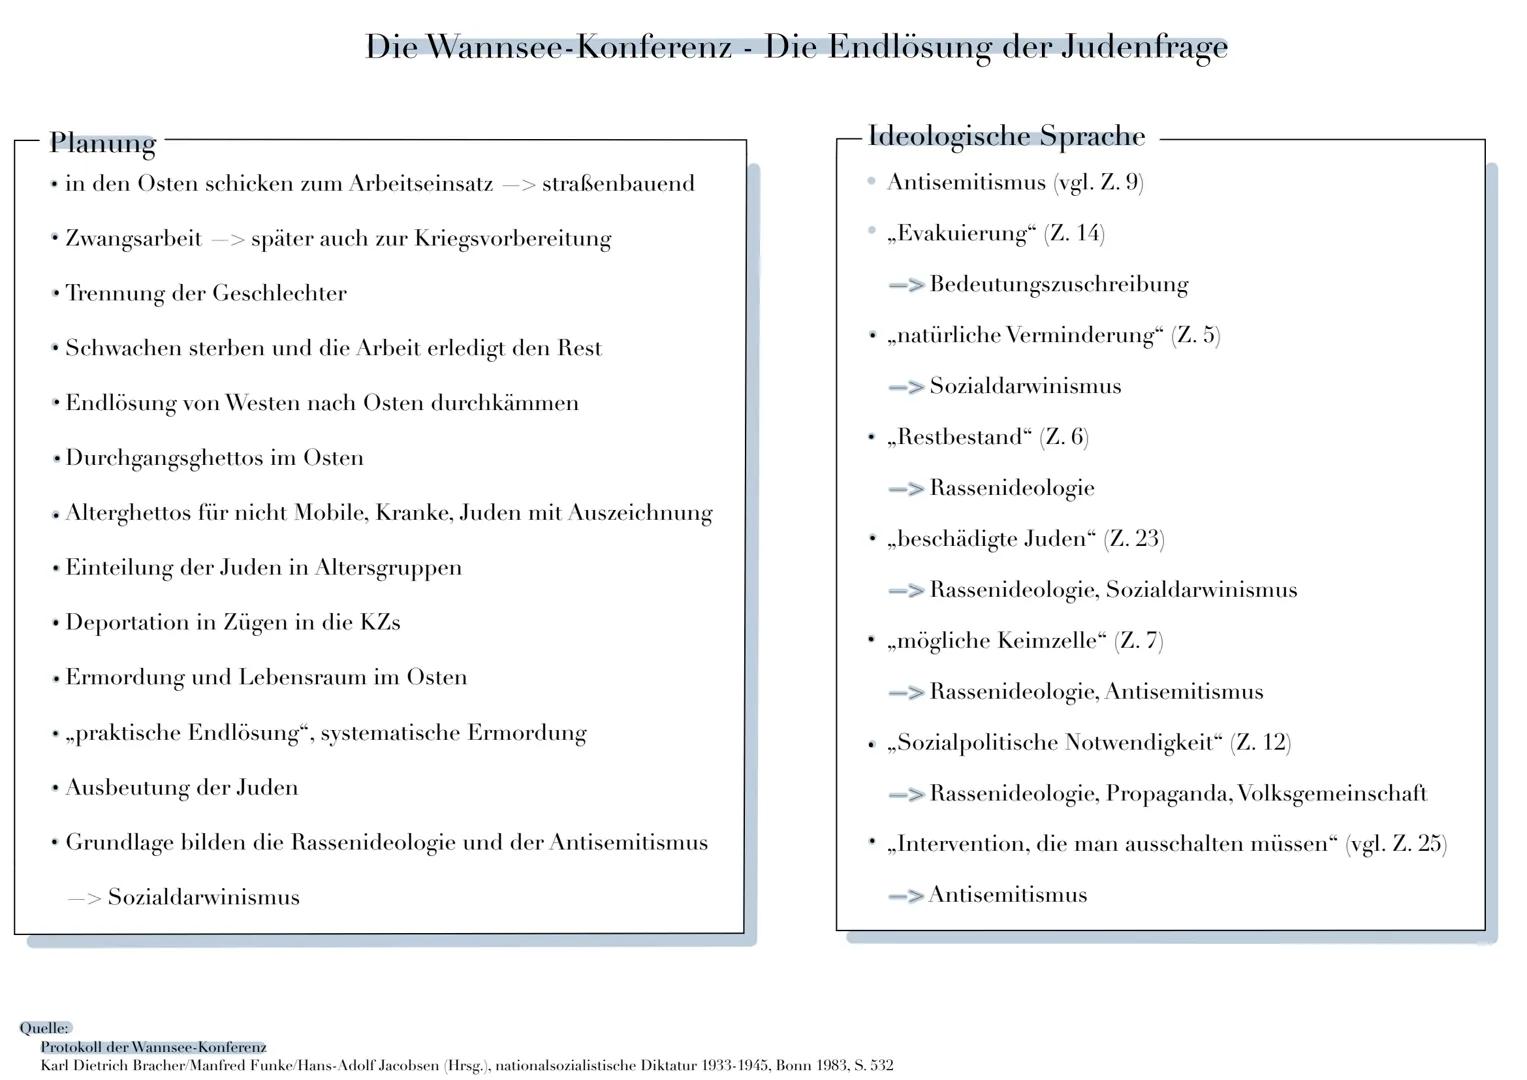 Die Wannsee-Konferenz - Die Endlösung der Judenfrage
Planung
in den Osten schicken zum Arbeitseinsatz->straßenbauend
• Zwangsarbeit -> späte